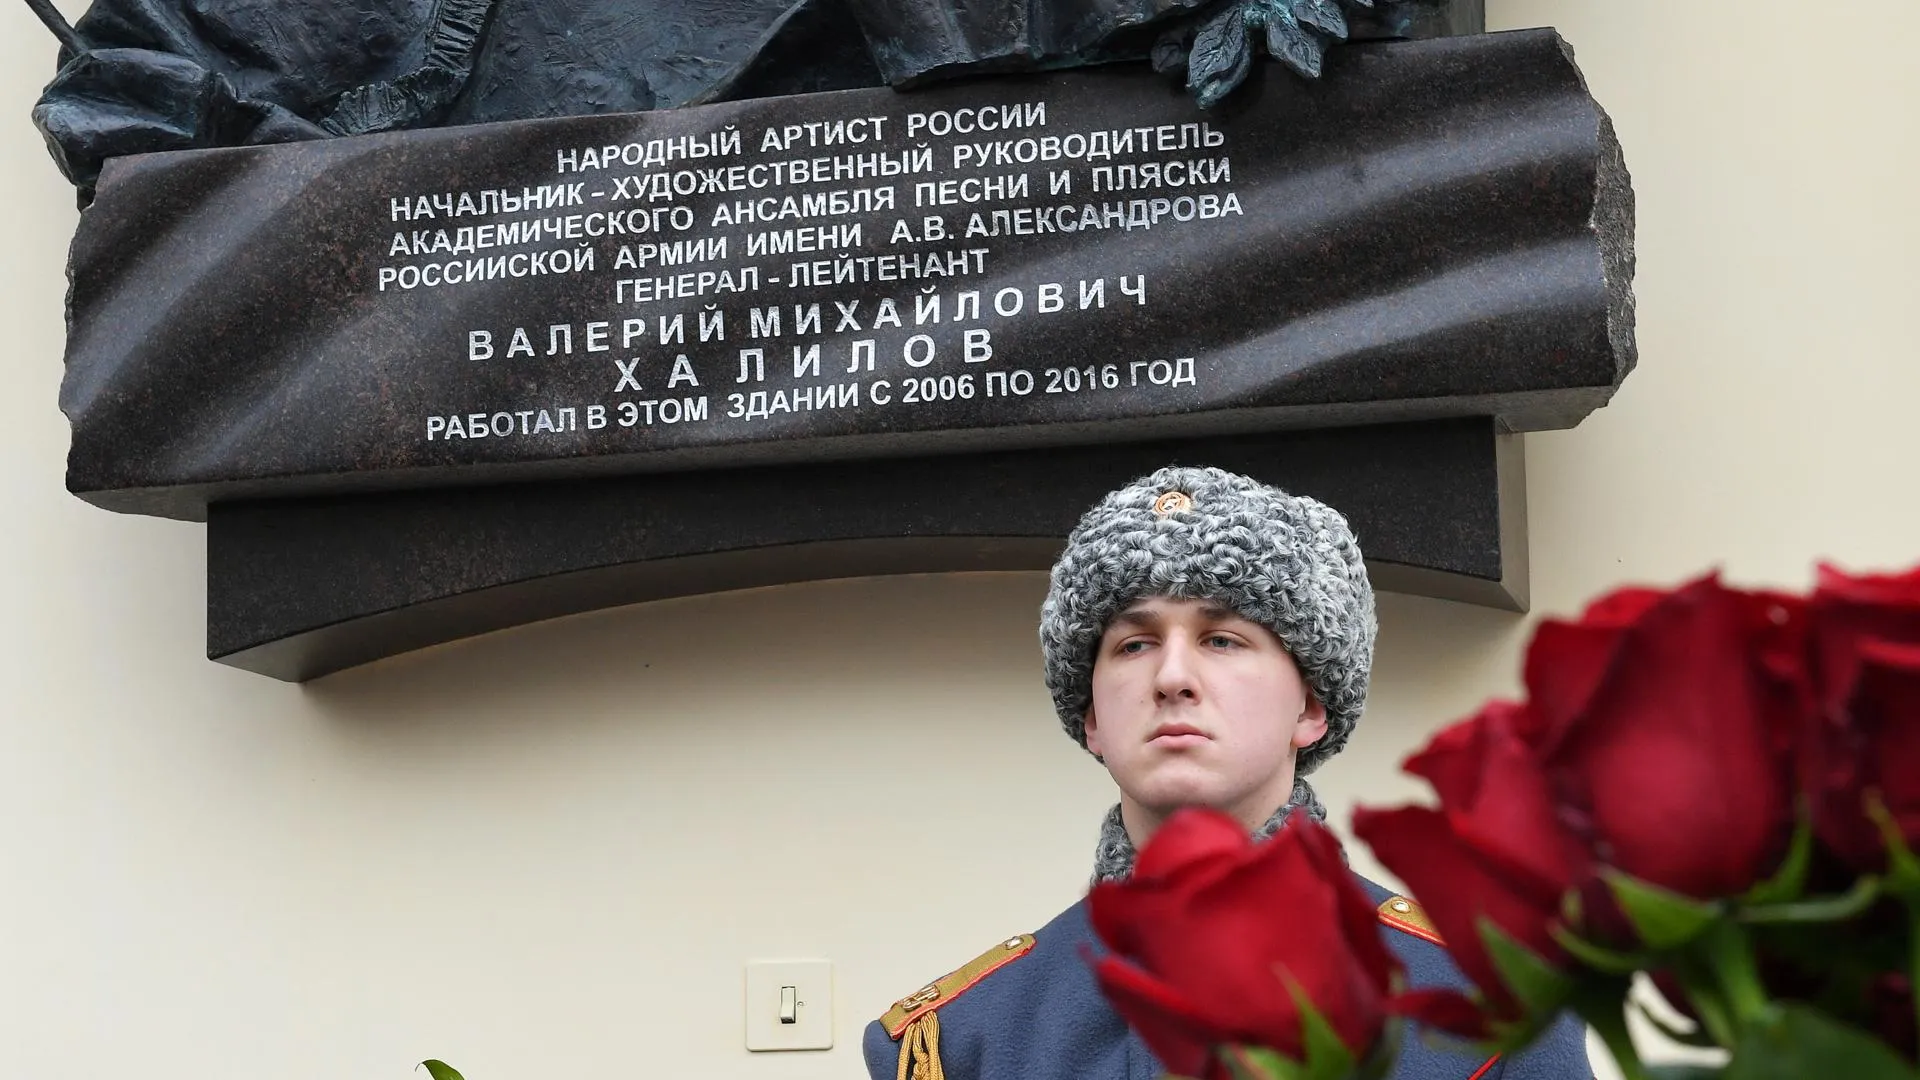 Мемориальную доску в честь погибшего дирижера Халилова установили в центре Москвы